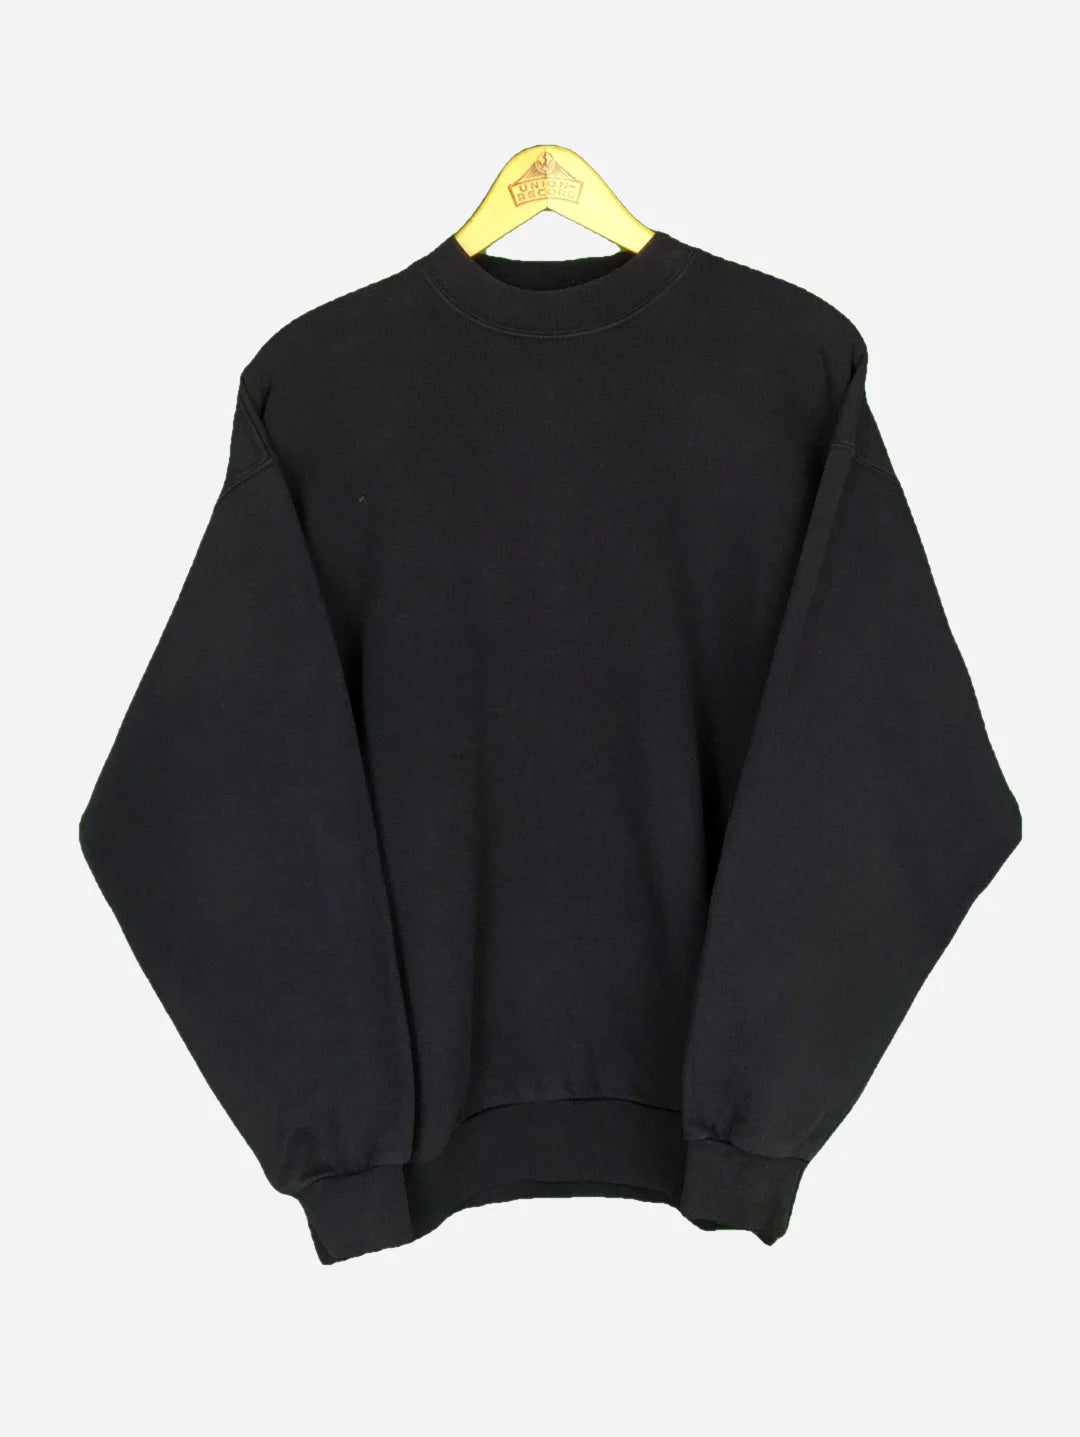 Jean Pascale Paris Sweater (L)